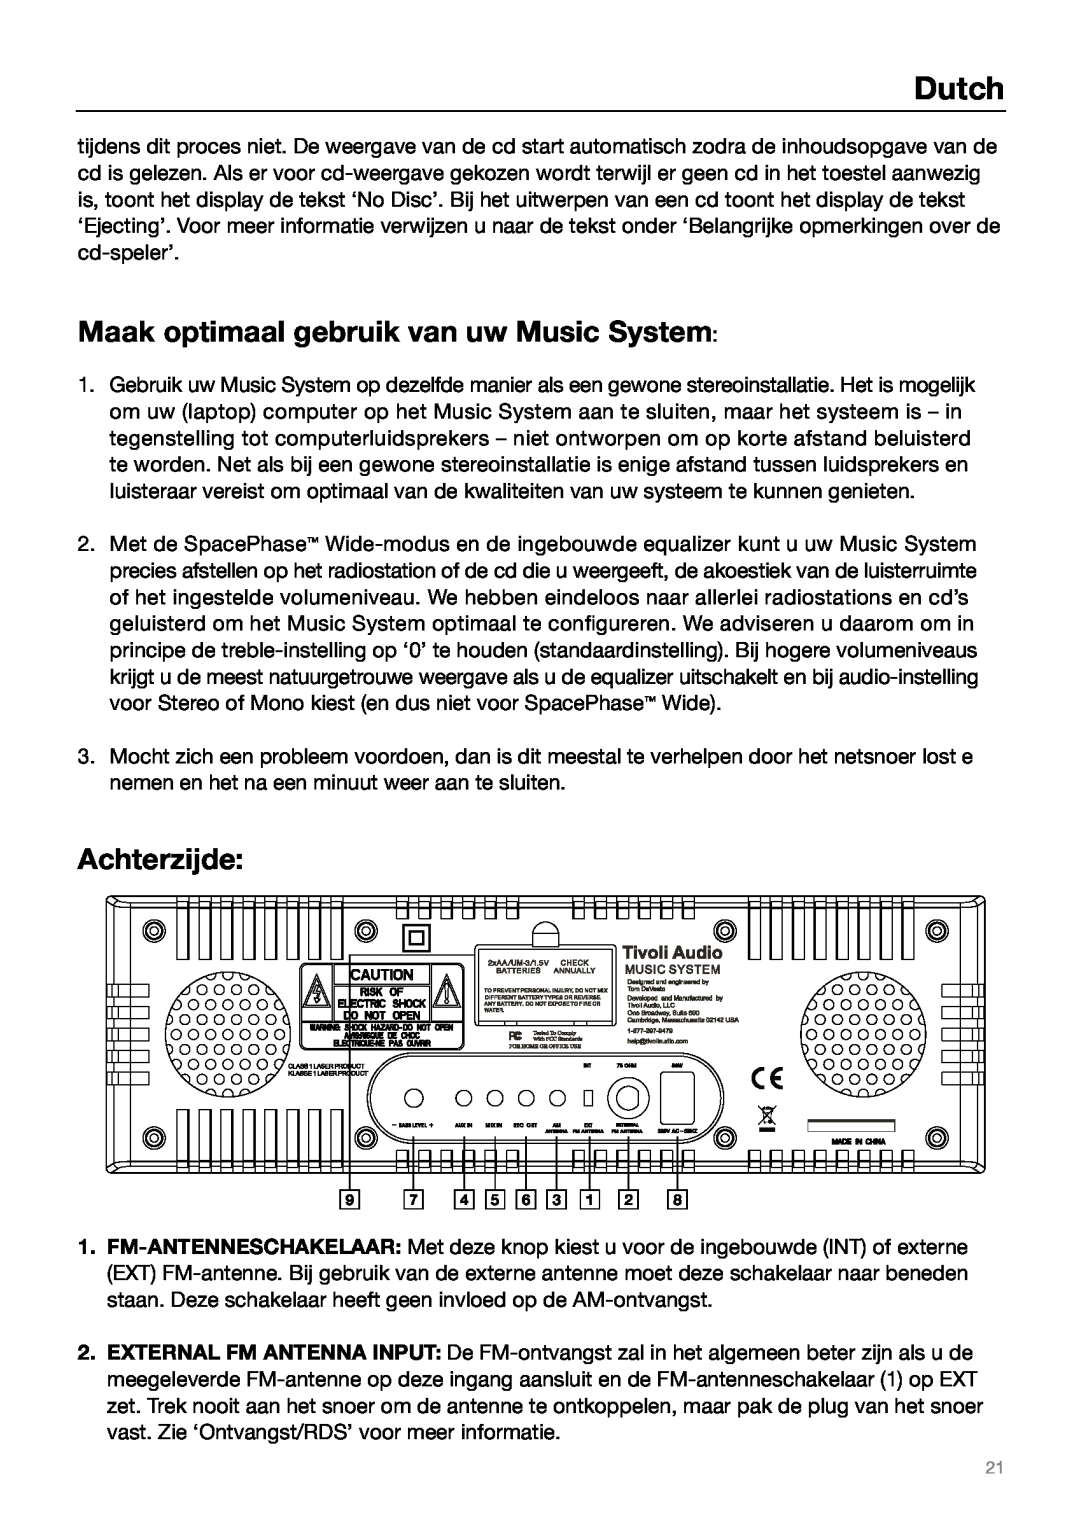 Tivoli Audio MUSIC SYSTEM owner manual Maak optimaal gebruik van uw Music System, Achterzijde, Dutch 